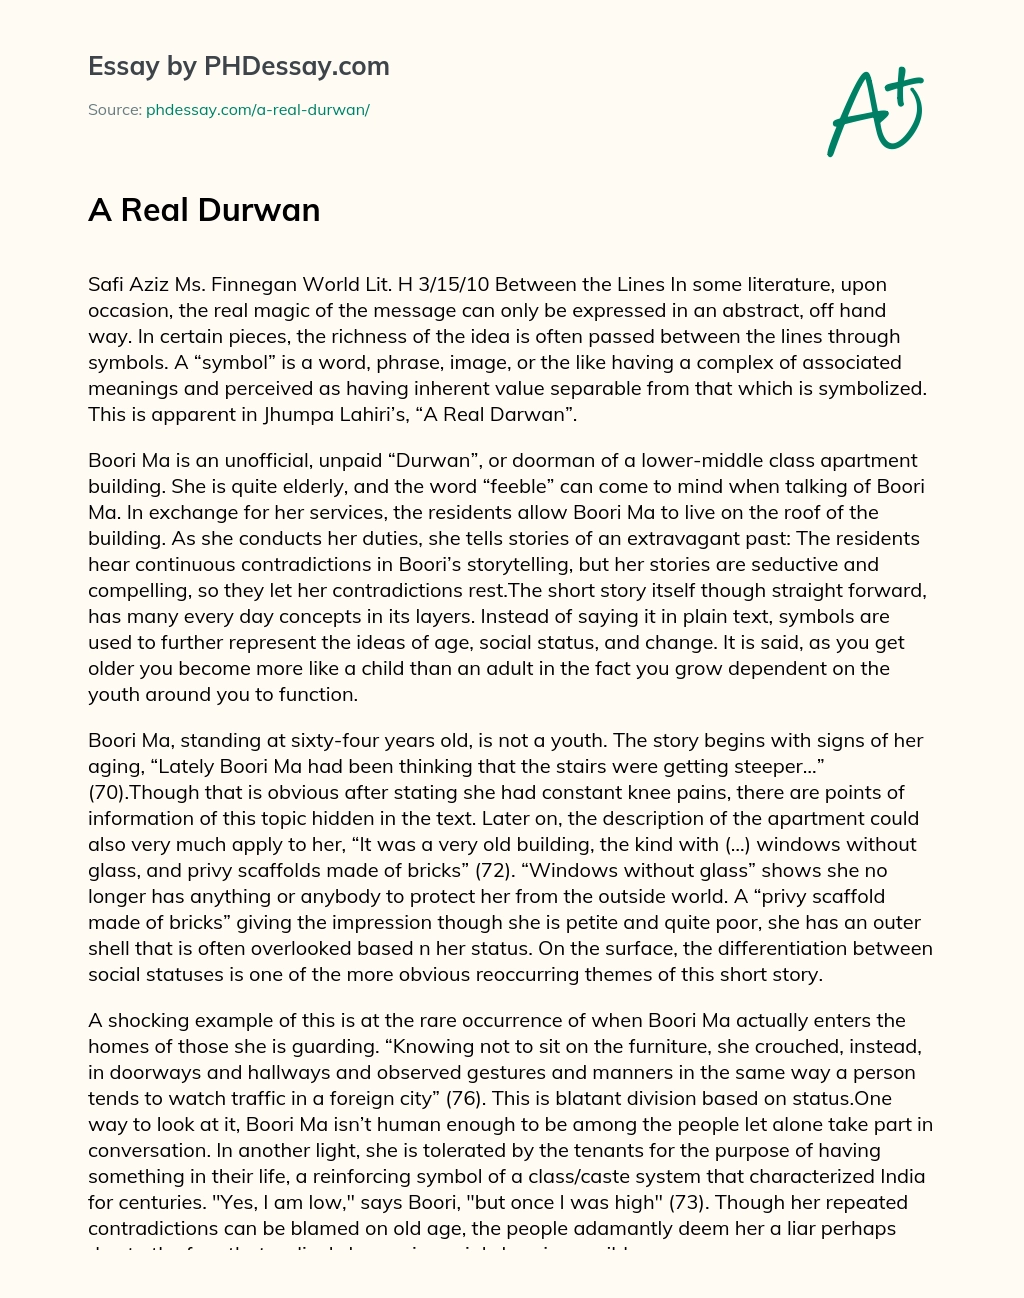 A Real Durwan essay